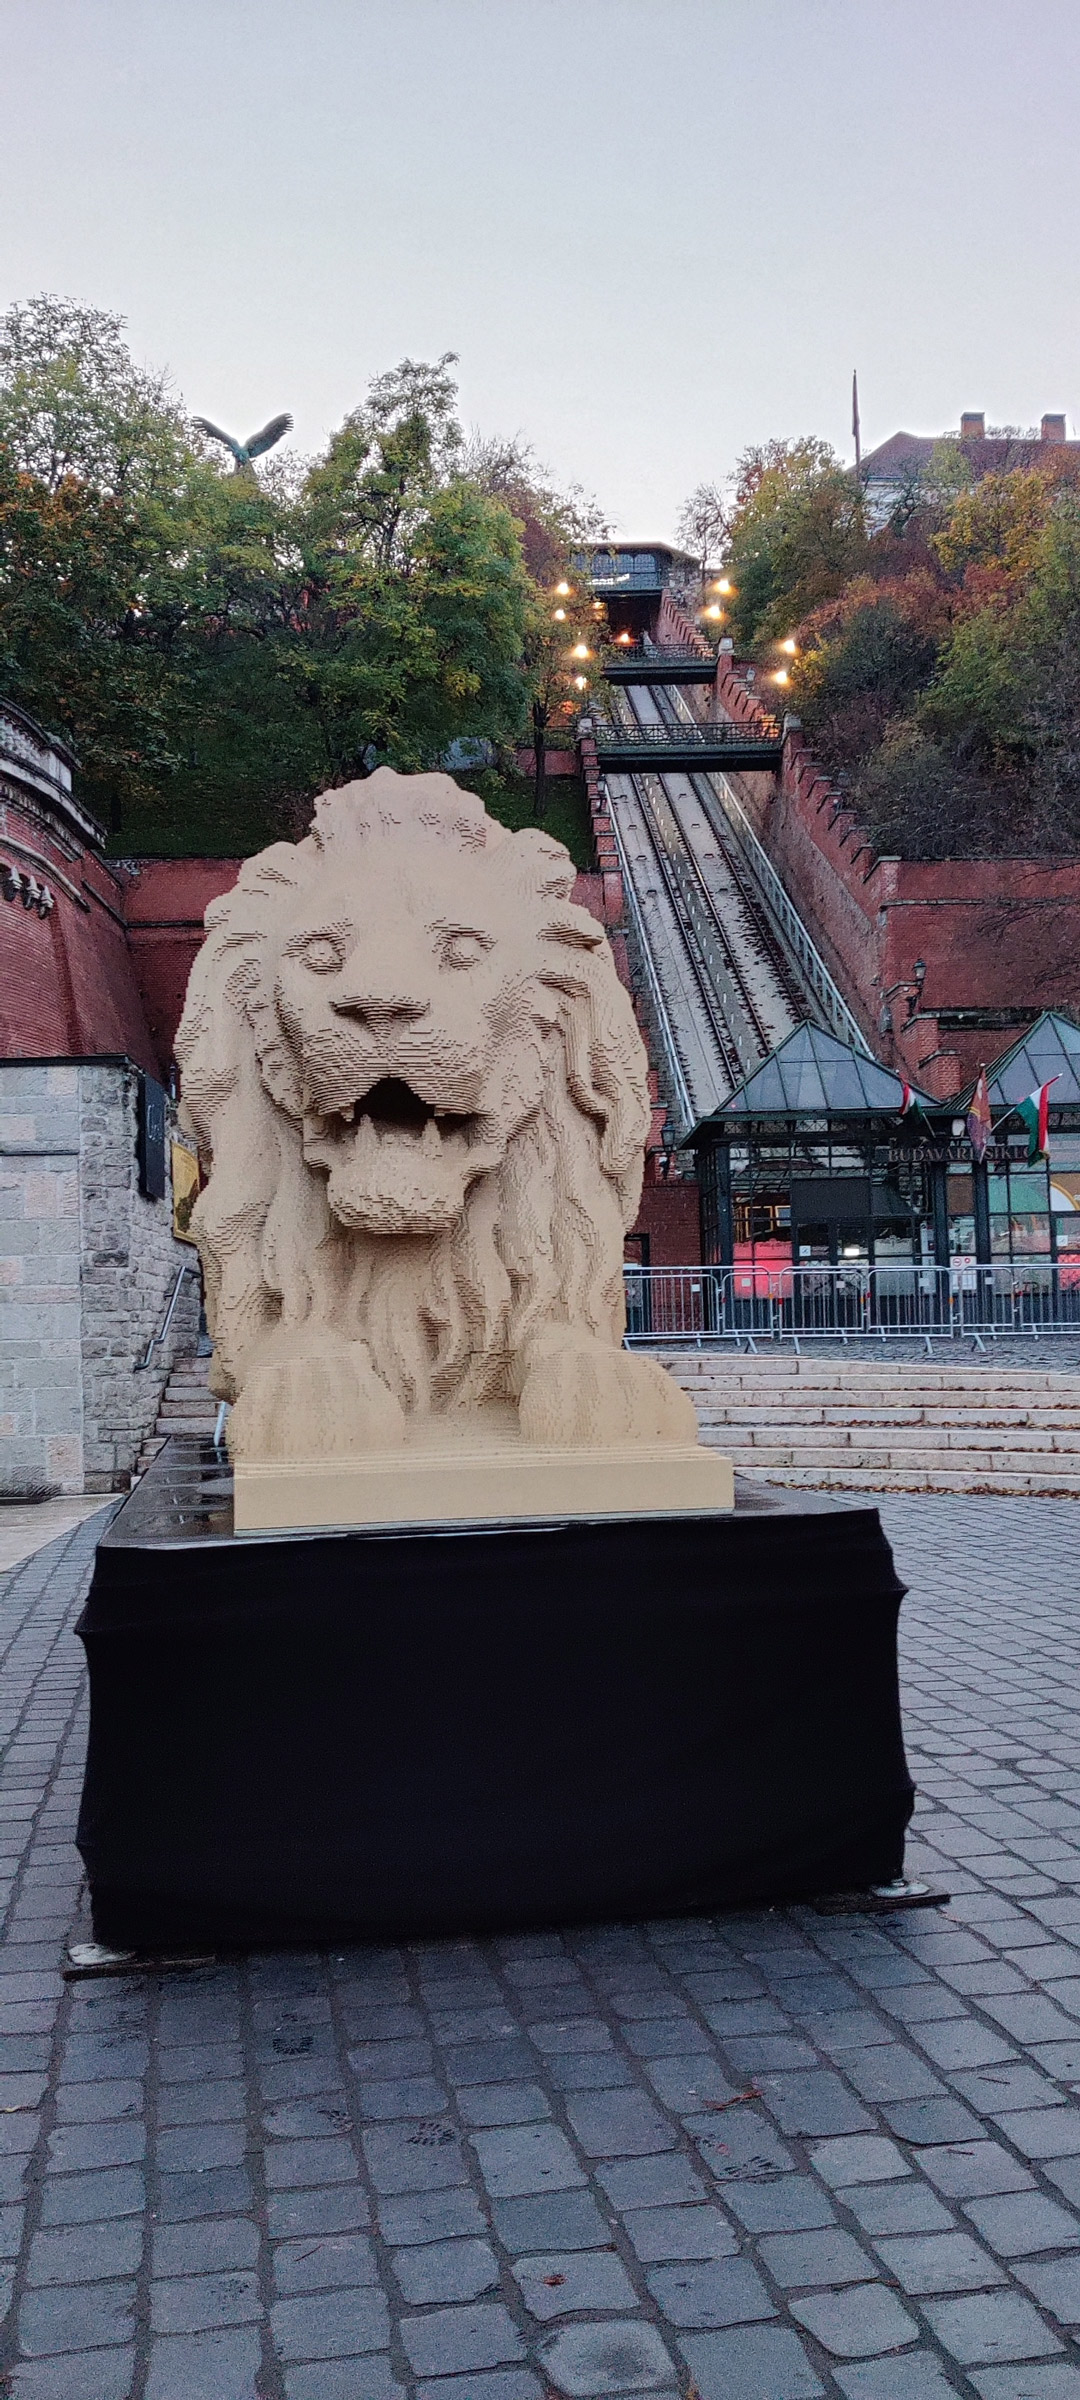 LEGO oroszlán a Clark Ádám téren a budavári sikló előtt, Clark Adam square